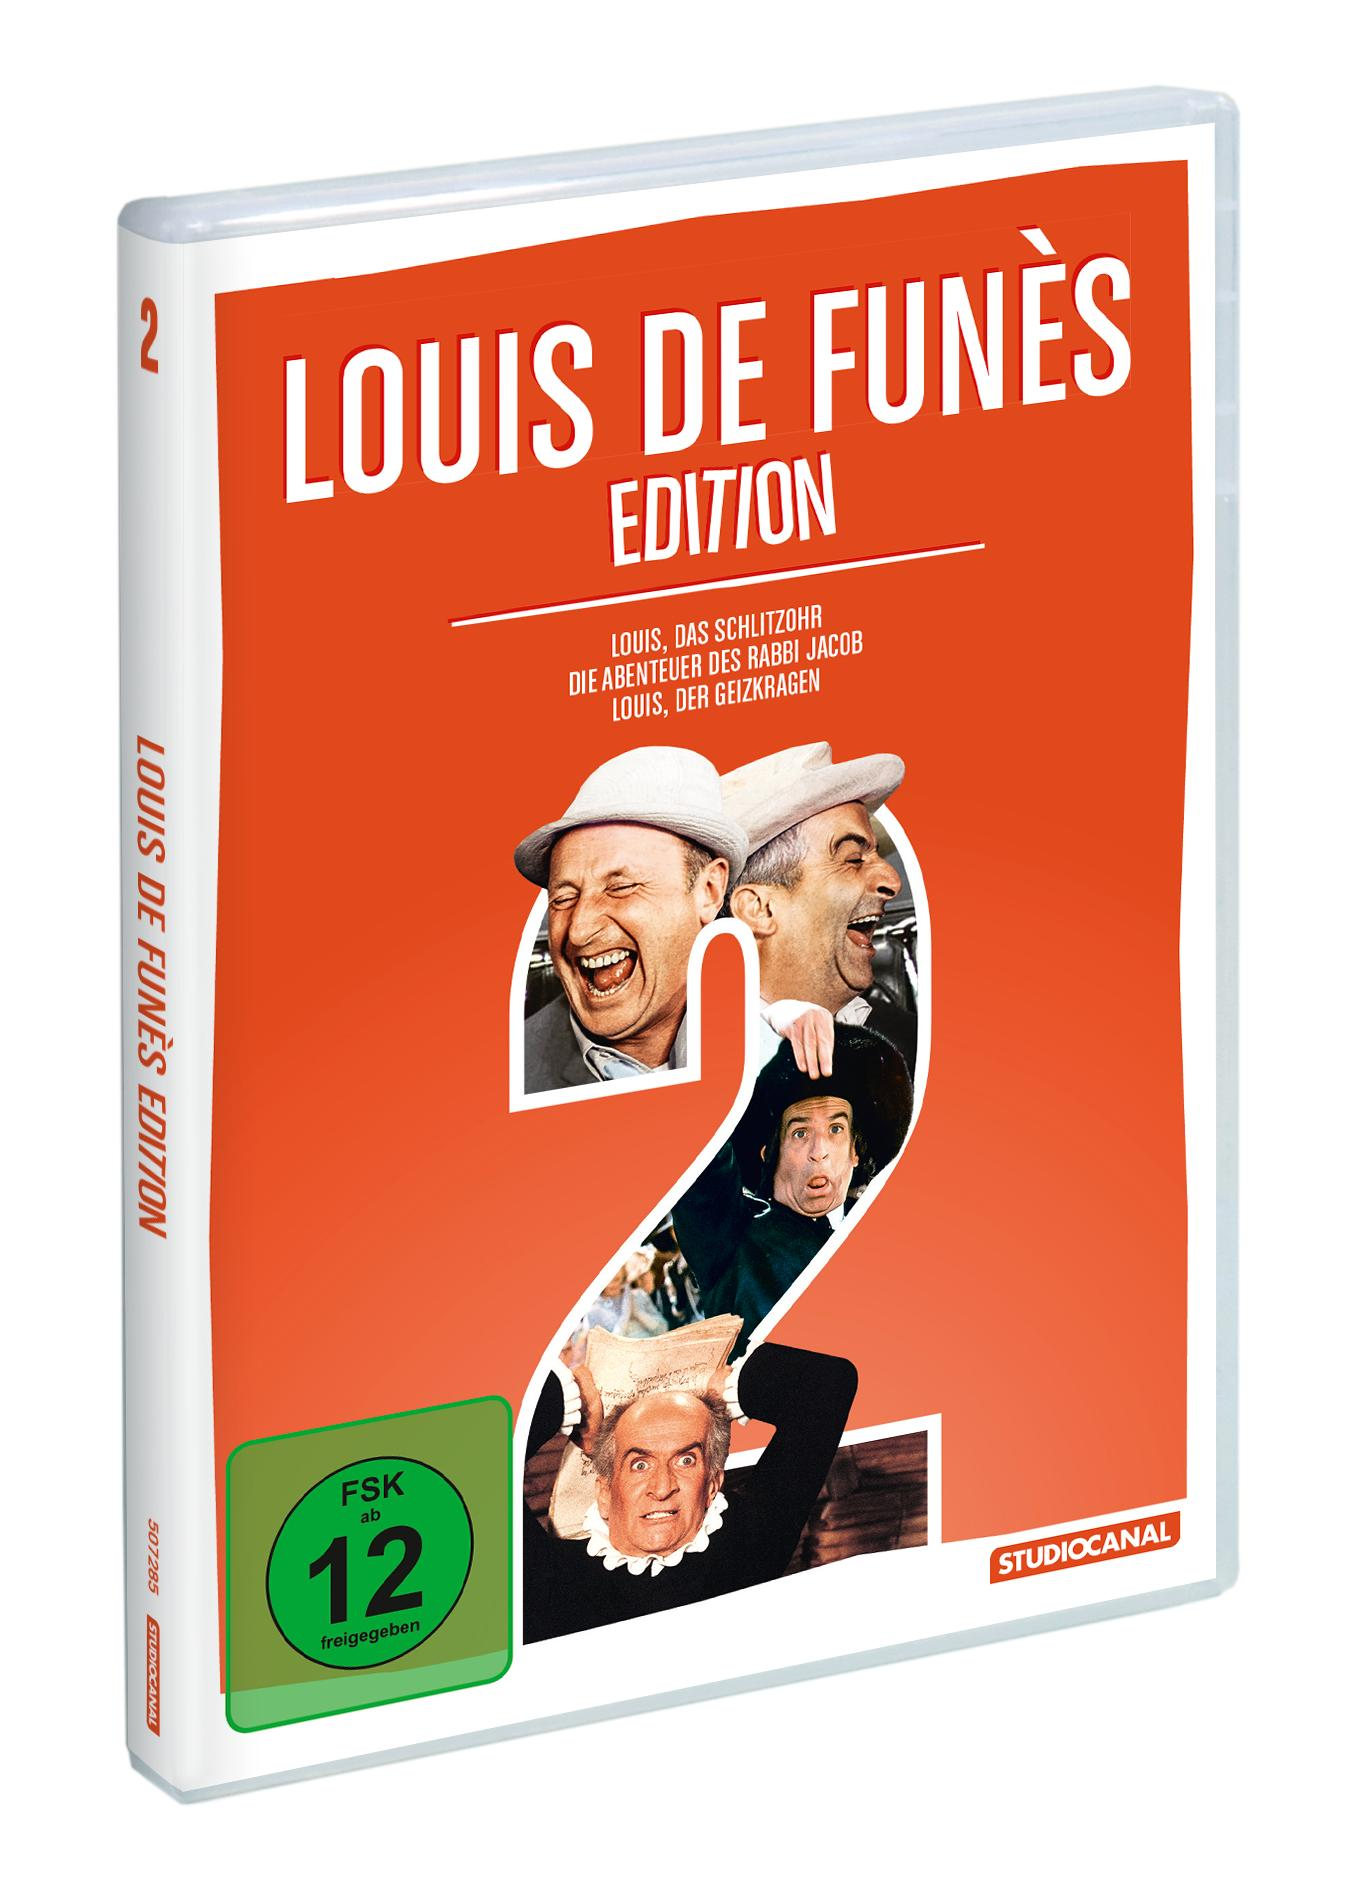 Louis de Funès DVD Edition 2